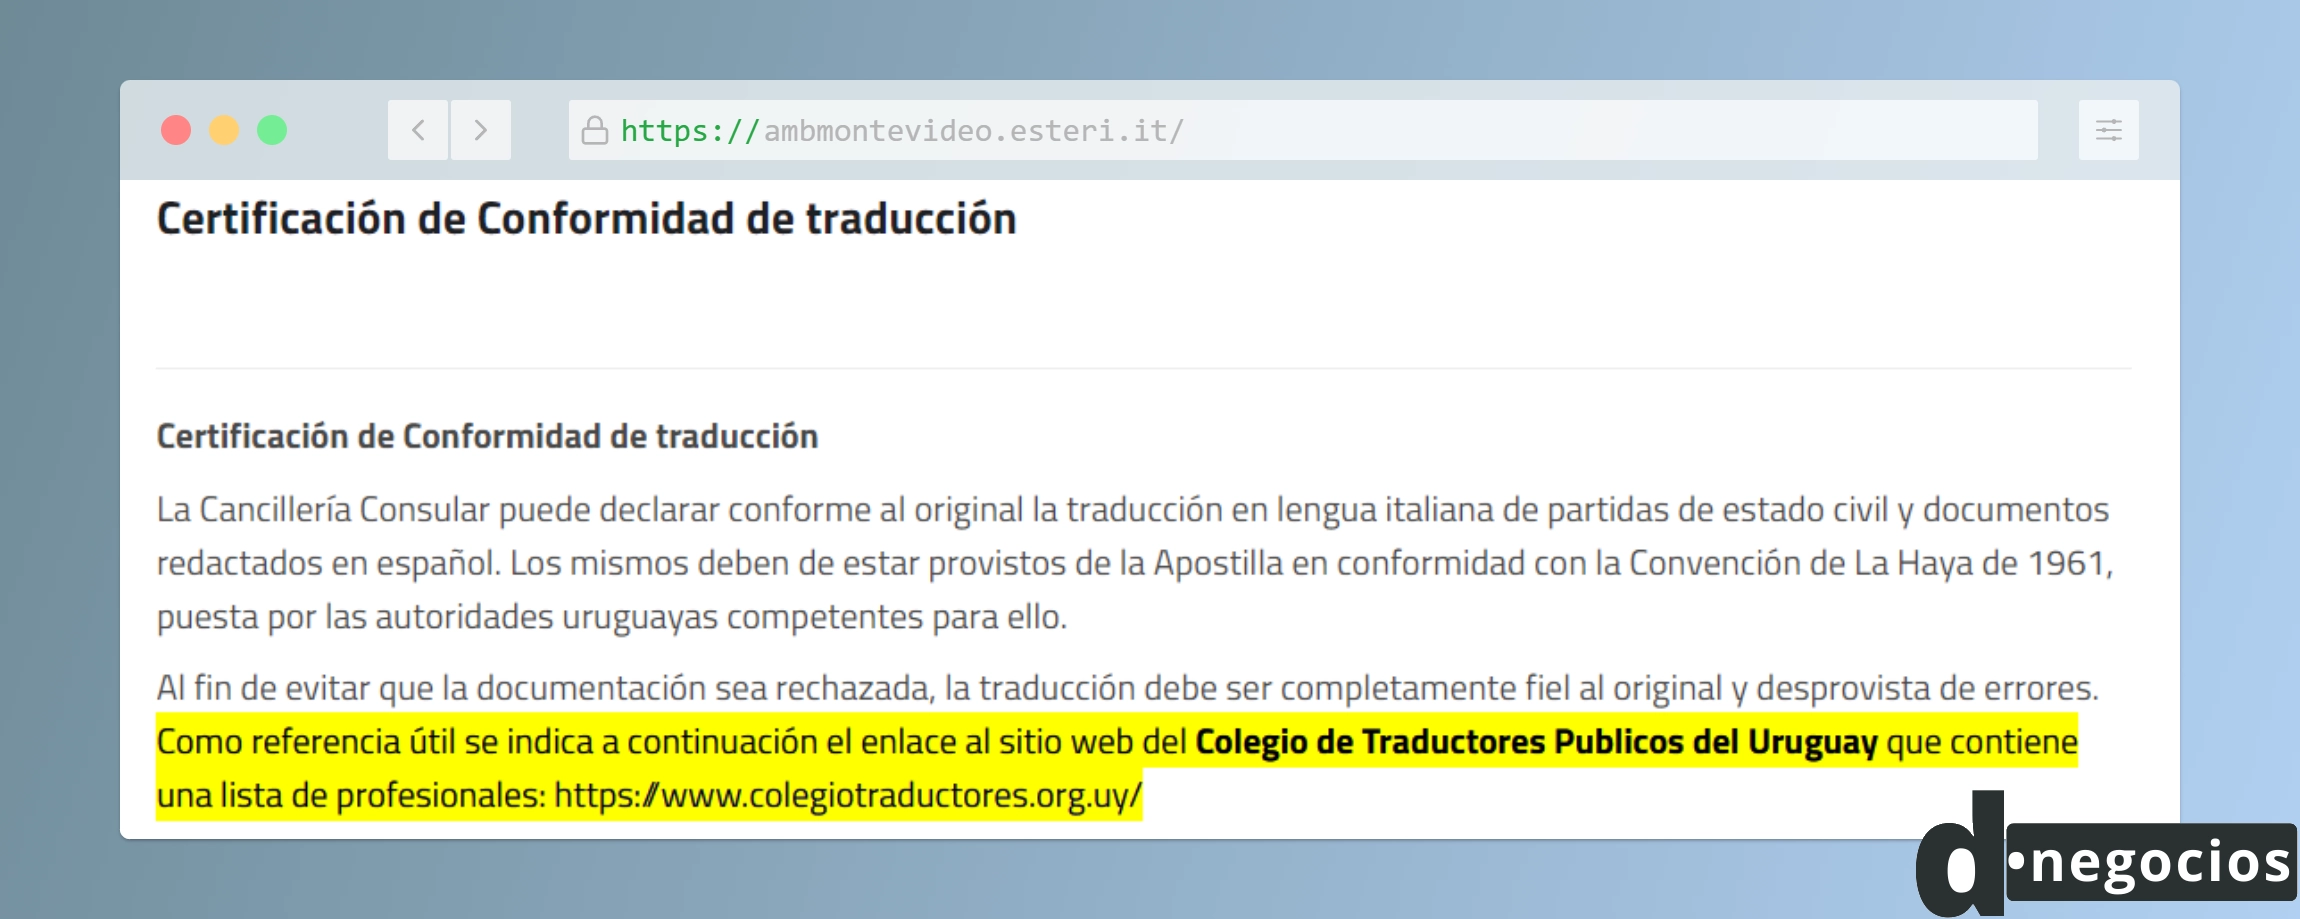 Certificado de conformidad de traducción. Embajada Italiana en Uruguay.